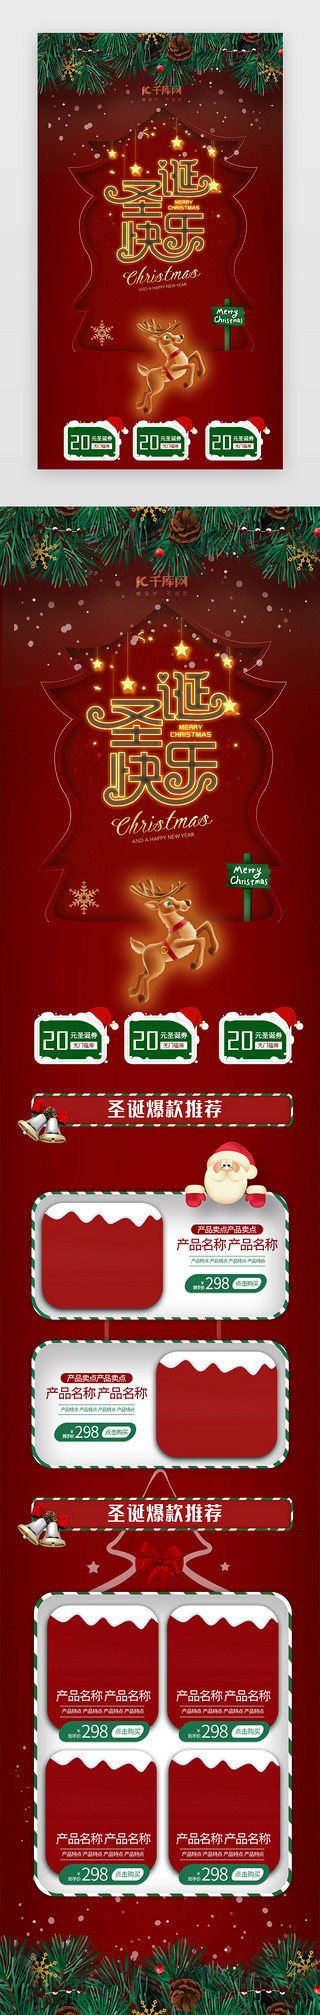 平安夜圣诞节快乐UI设计素材_红色圣诞节电商促销h5